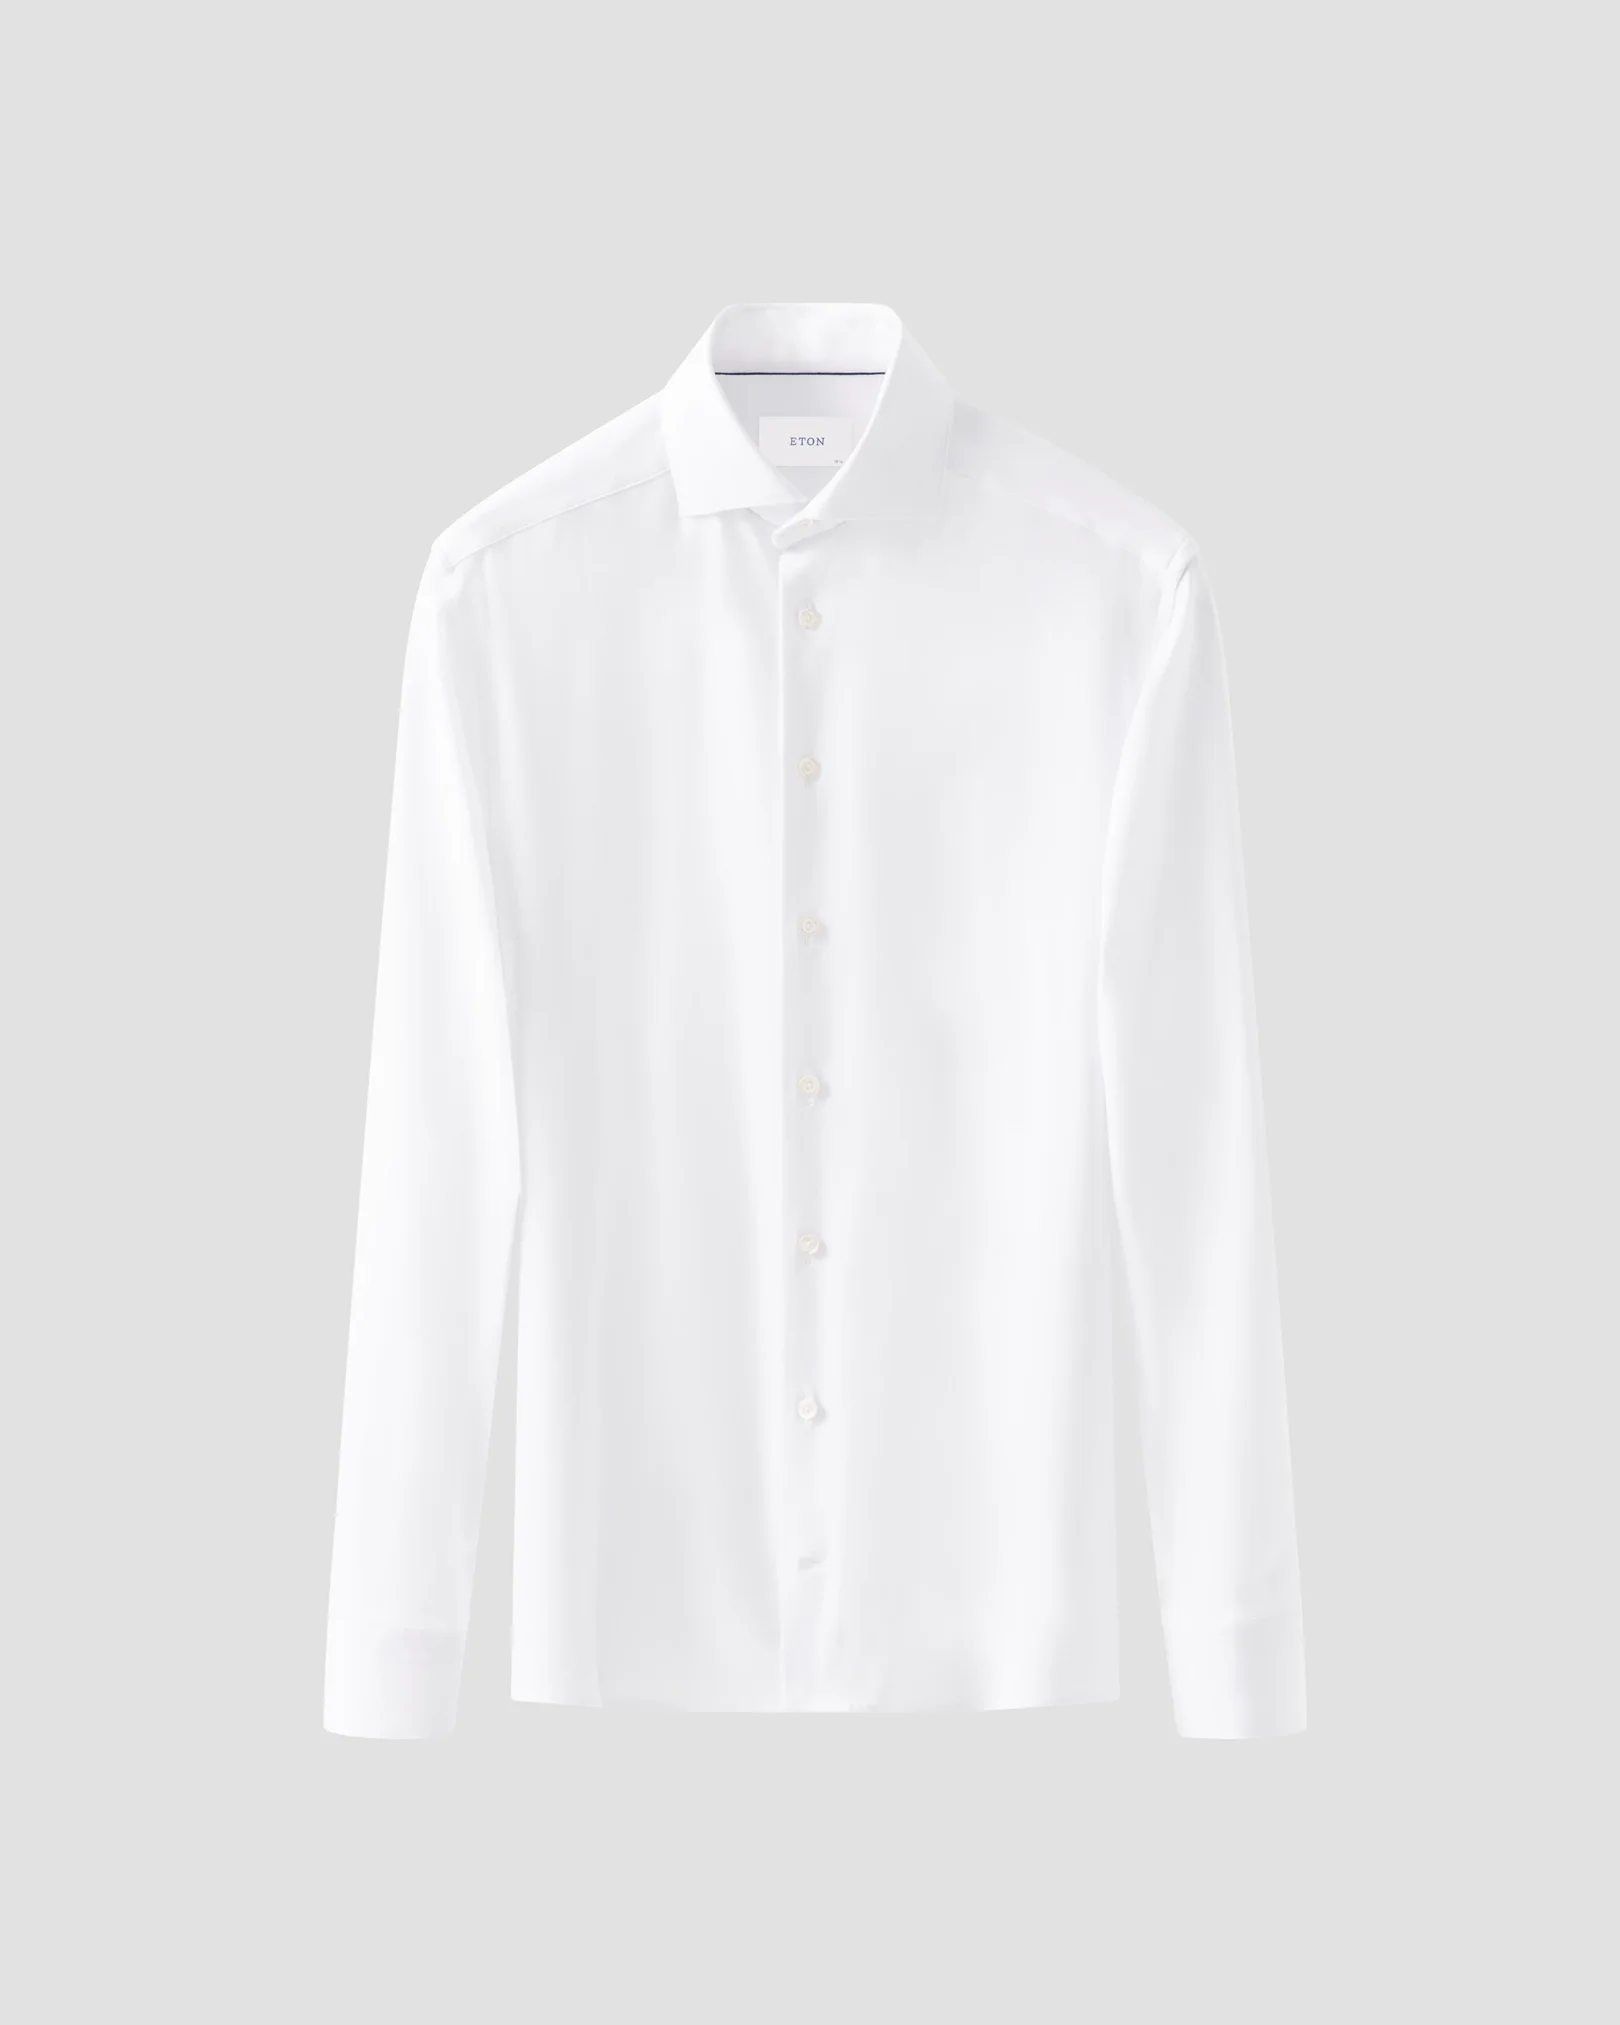 Eton - White Solid Cotton Four-Way Stretch Shirt